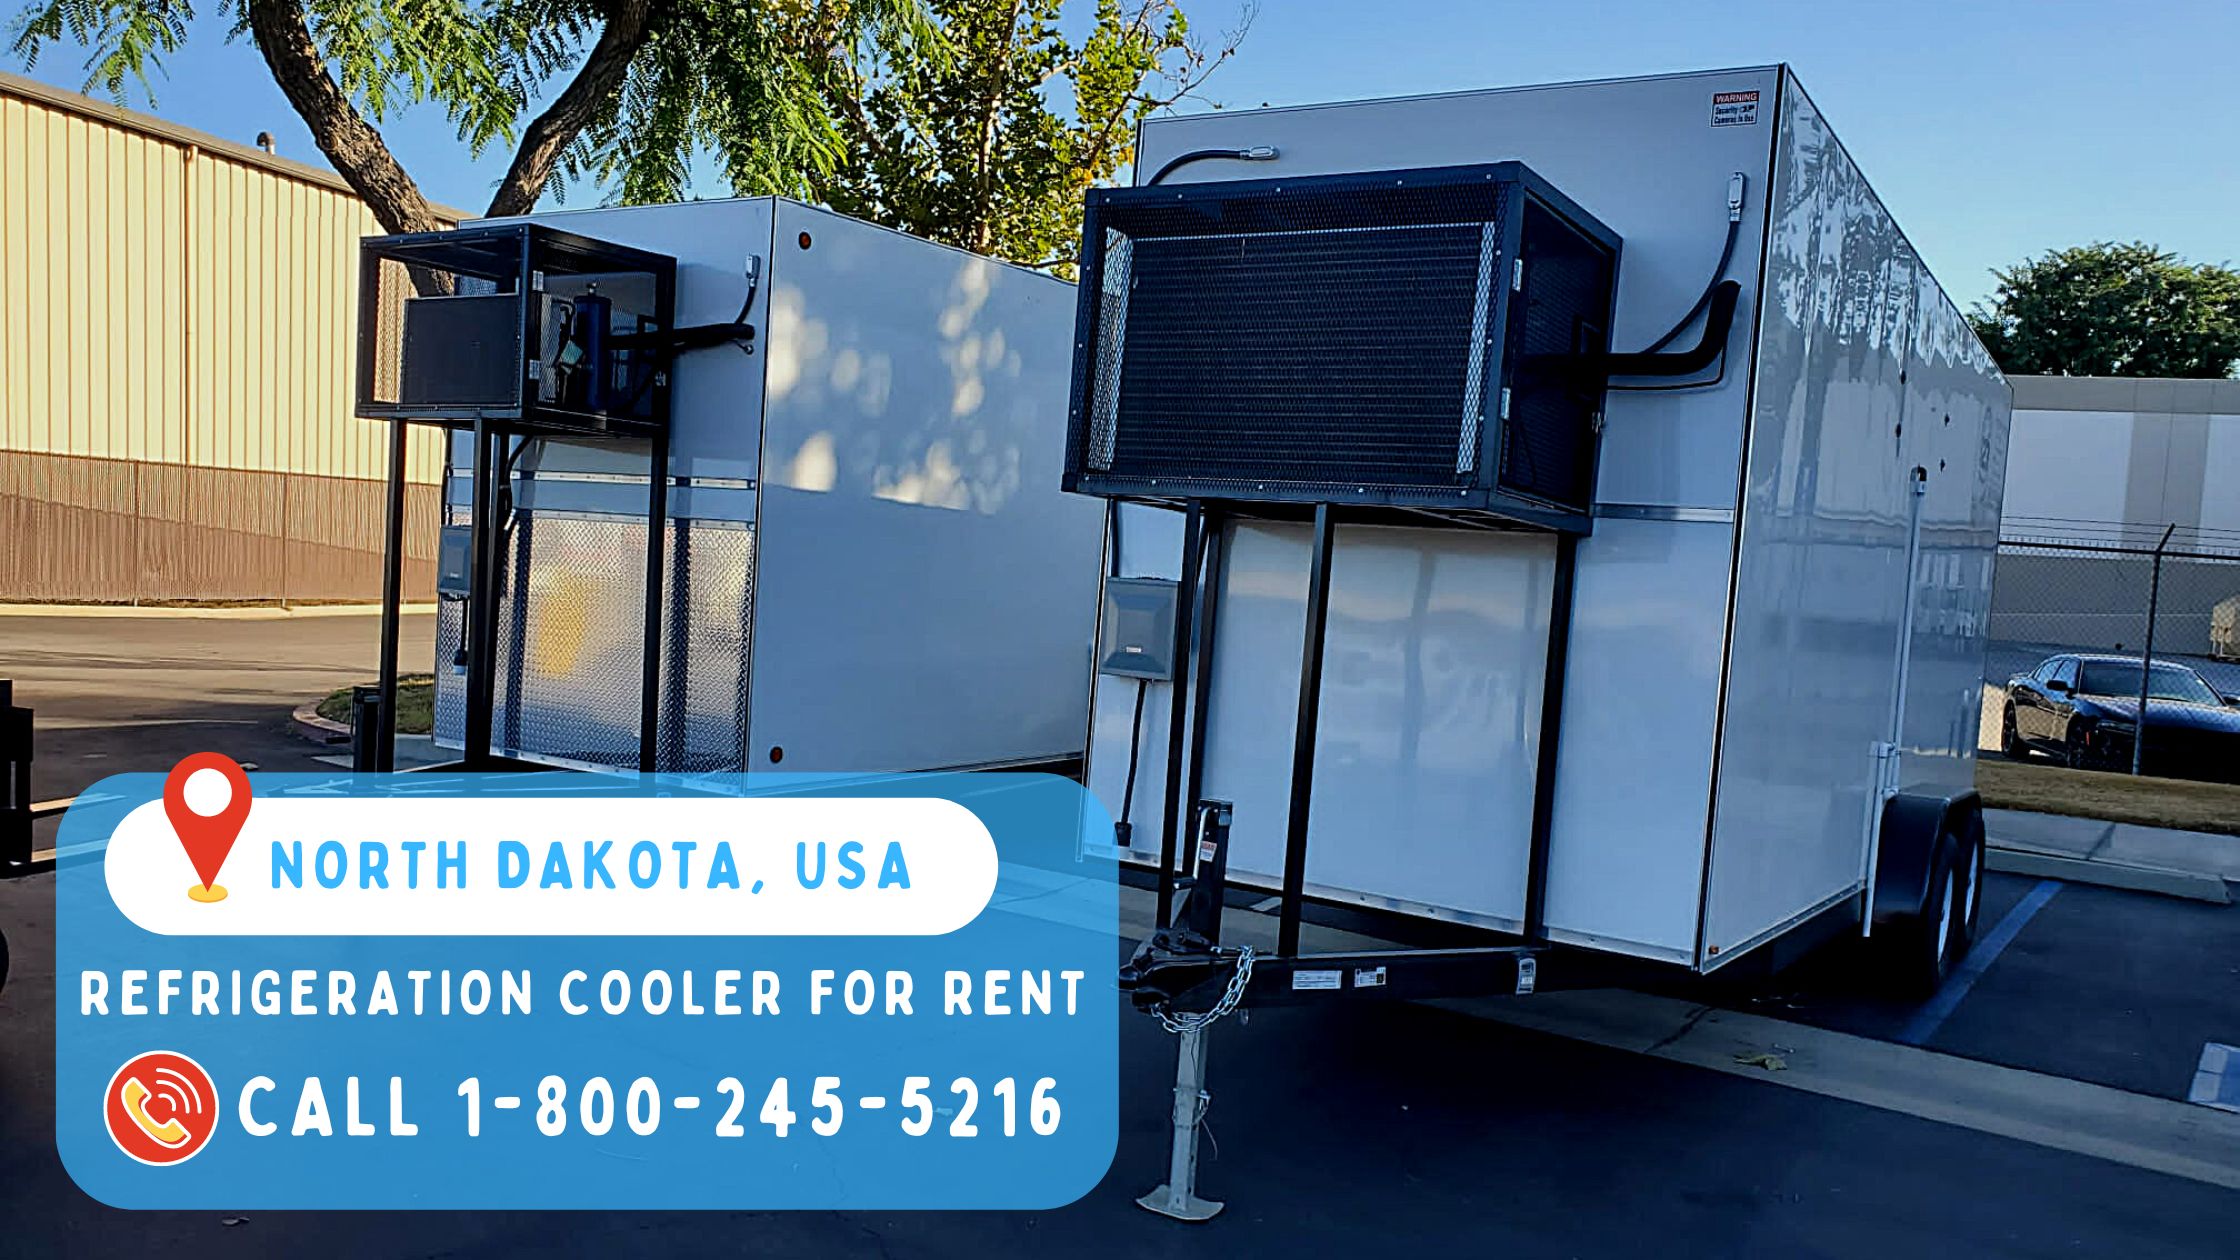 Refrigeration Cooler for Rent in North Dakota